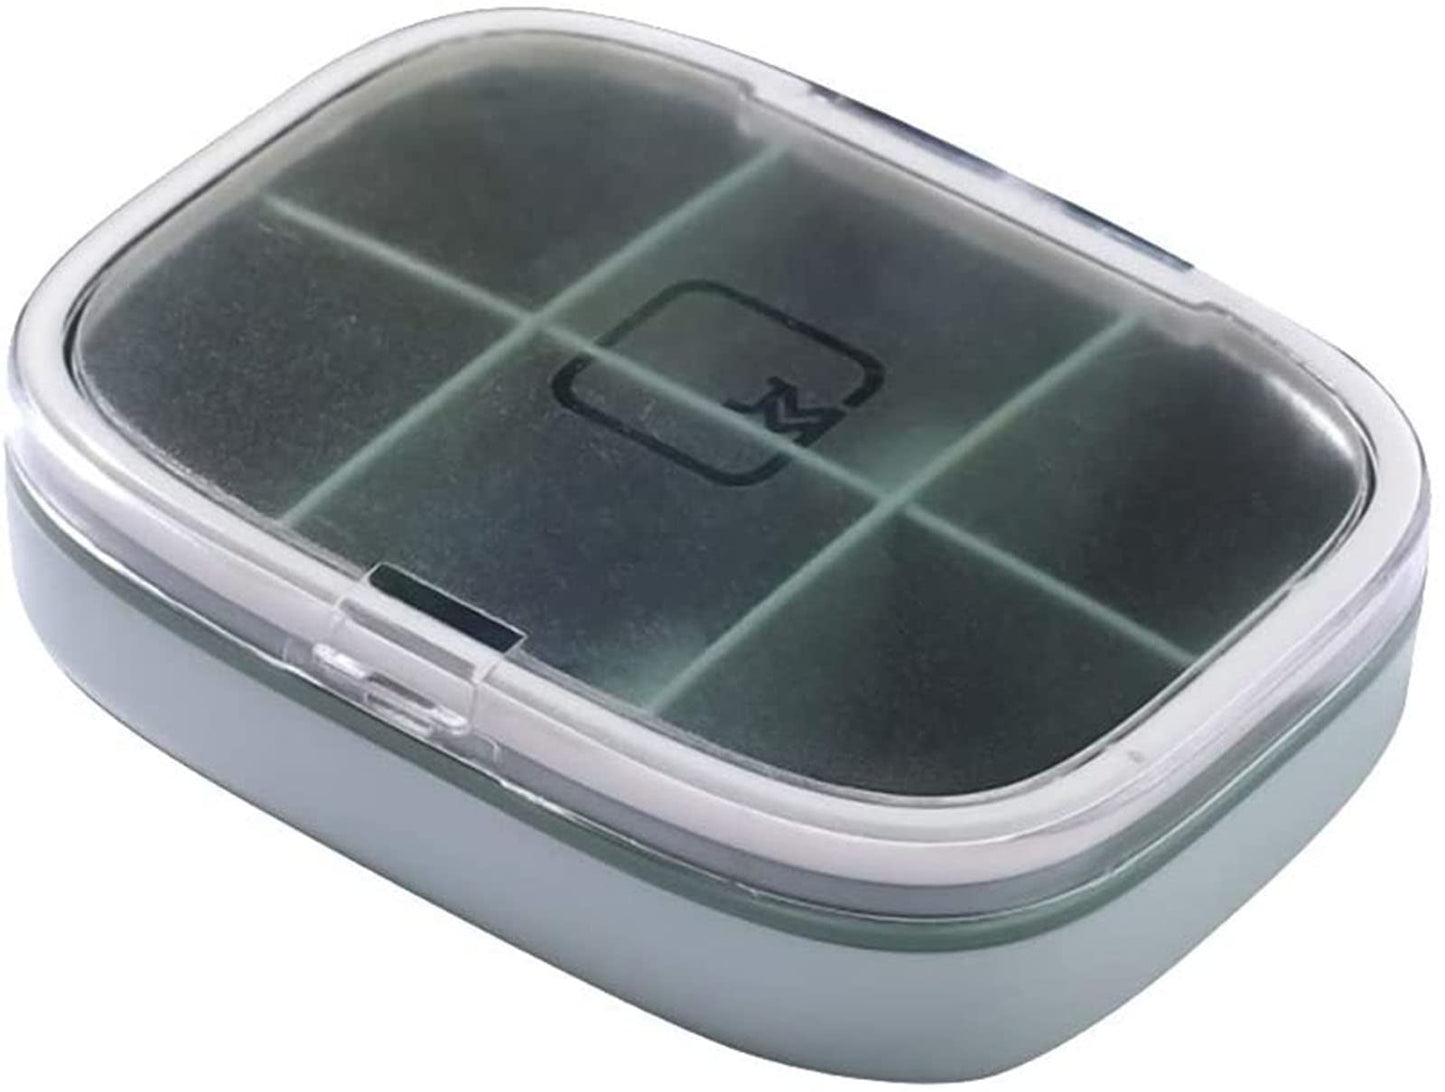 AJIADA 6 Compartments Travel Pill Organizer Box Moisture Proof Small Pill Box for Pocket Purse Daily Travel Case Portable Medicine Vitamin Container, White